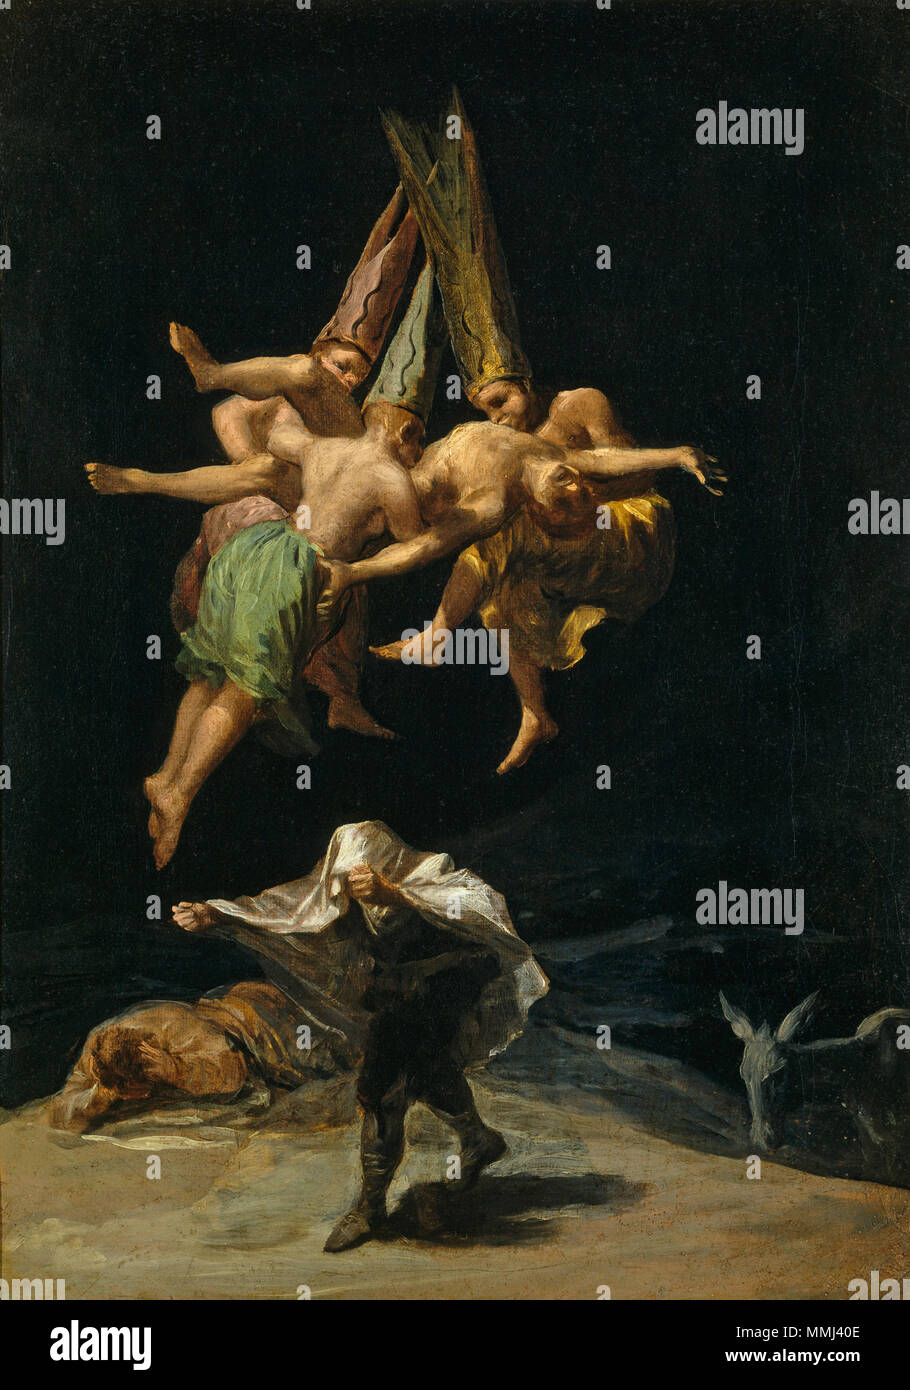 The Witches' Flight. 1798. Francisco de Goya - Vuelo de brujas (1798) Stock Photo